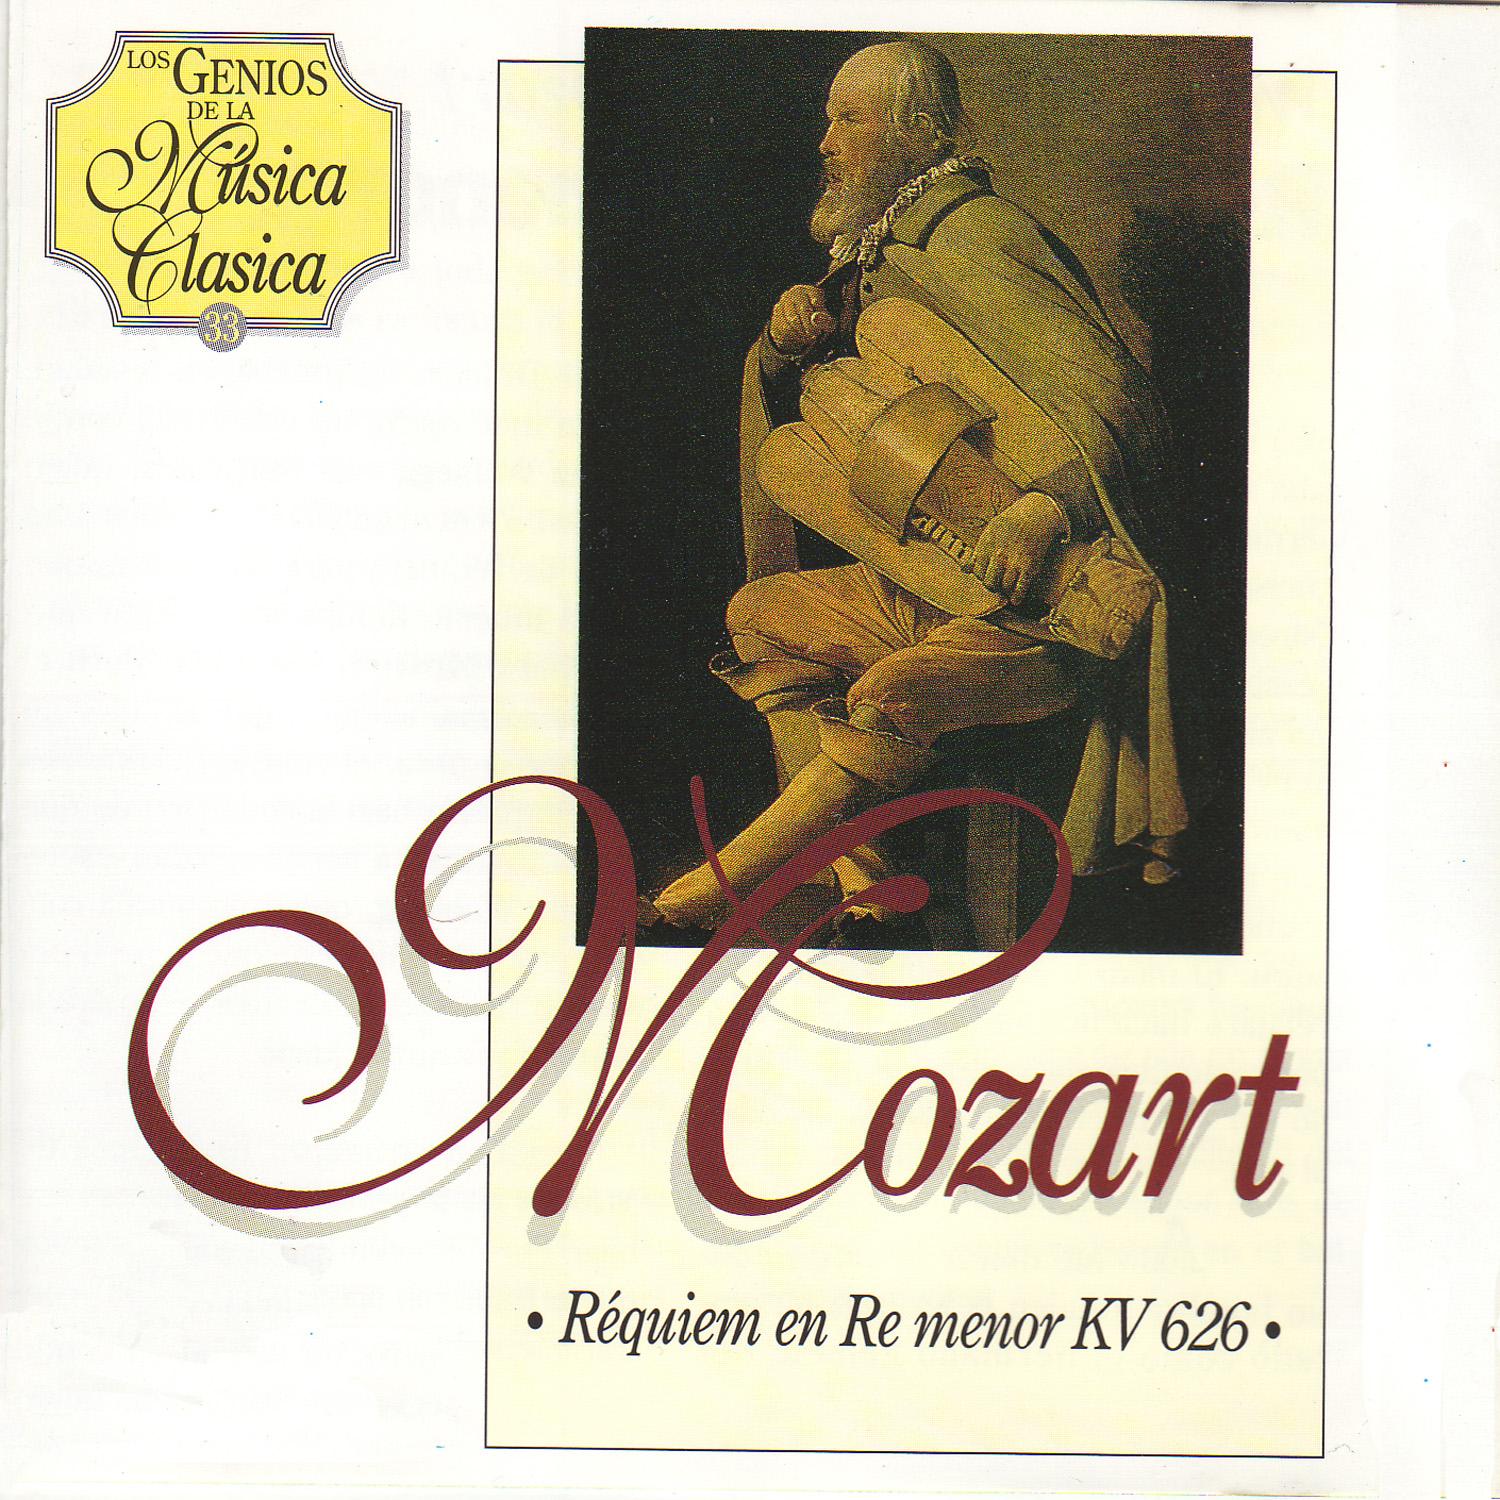 Re quiem en Re menor, KV 626 de Mozart